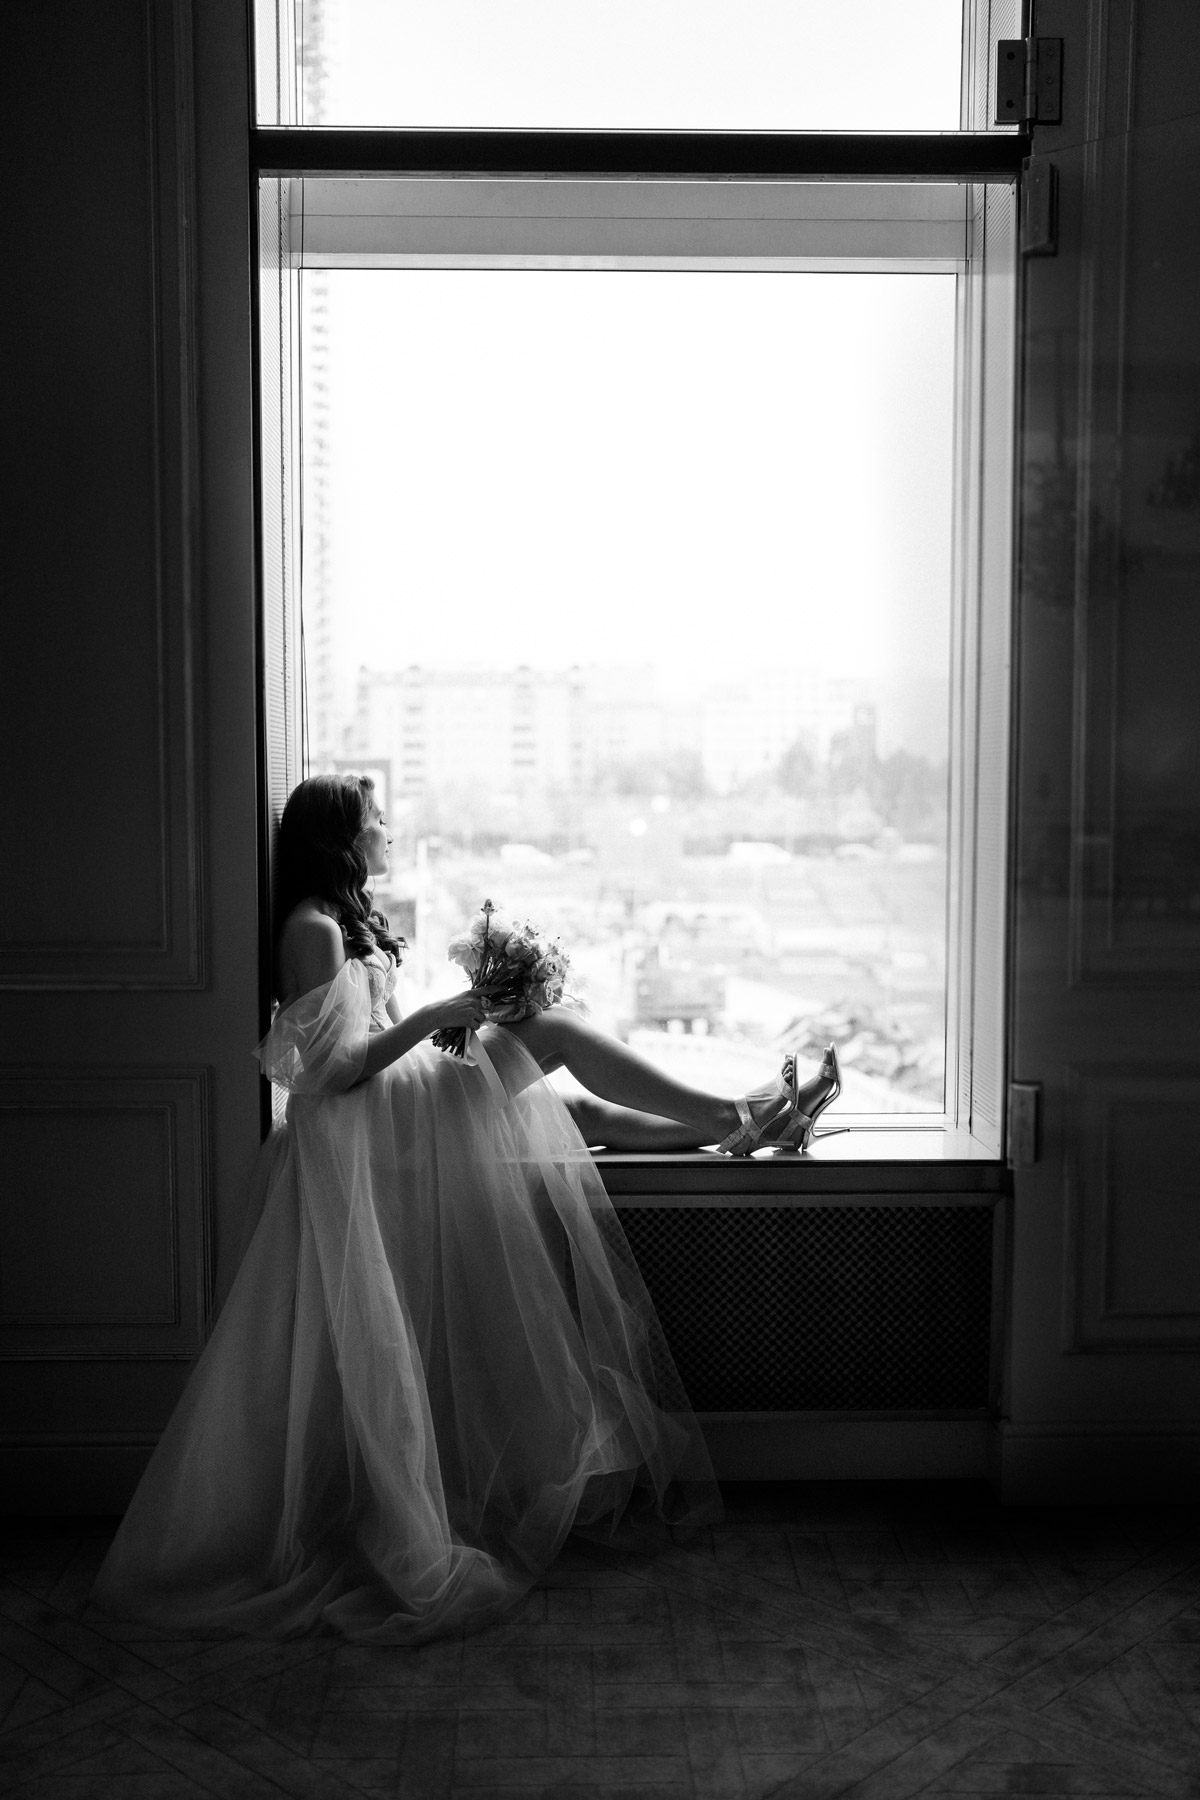 auf Hotel Adlon Kempinski Hochzeit in Berlin schaut Braut im Bridal Fashion Shooting aus dem Fenster - Fine Art schwarzweiß Hochzeitsfoto © www.hochzeitslicht.de #hochzeitslicht